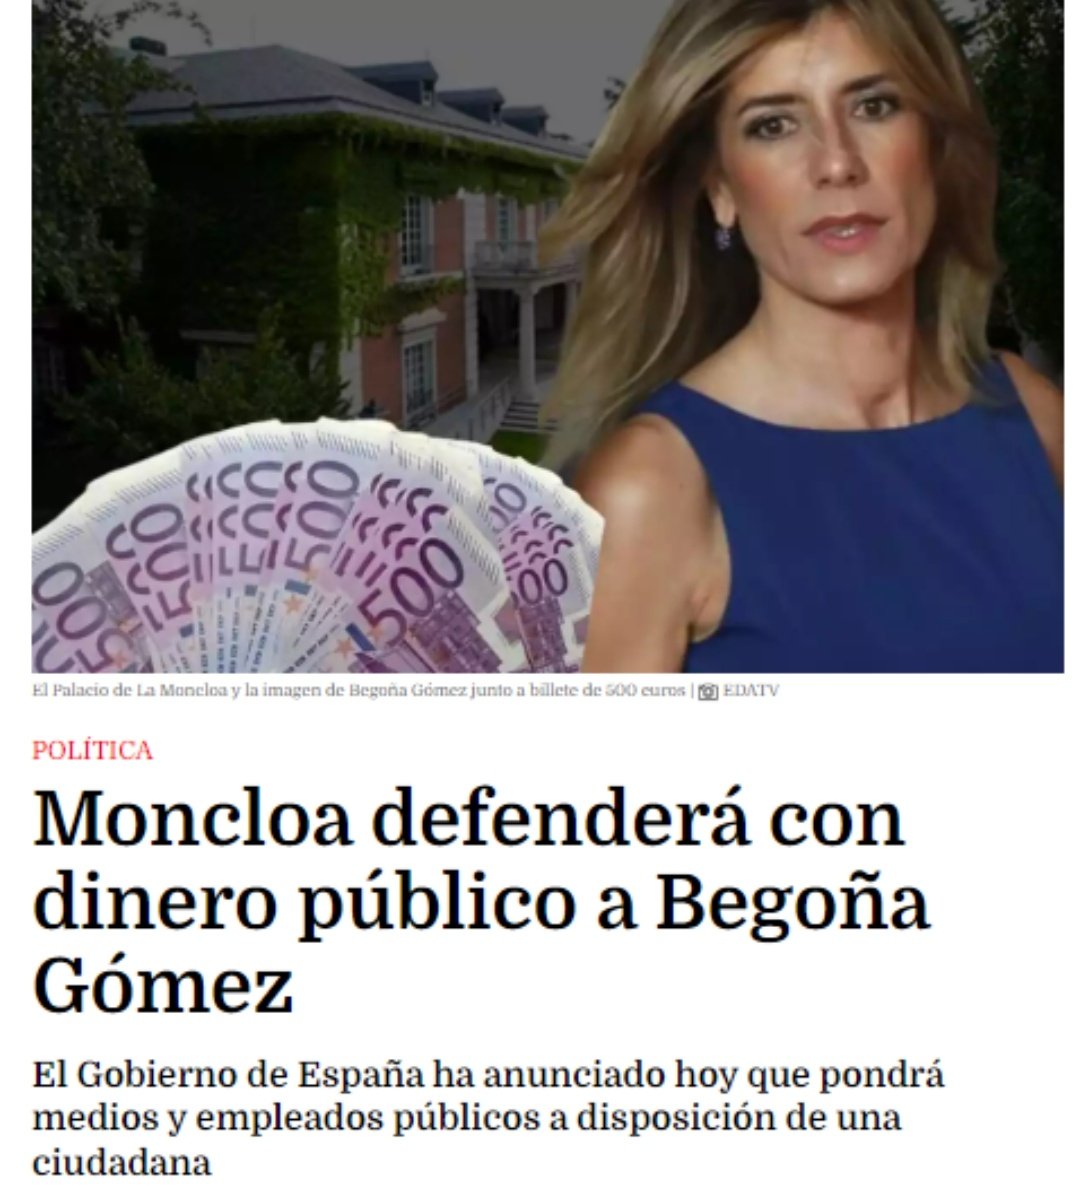 Es decir, que la mujer del autócrata, Begoña Gómez, encima de estar denunciada por hechos gravísimos por un caso de corrupción y tráfico de influencias, los Españoles tenemos que pagar con nuestro dinero su defensa desde Moncloa. Esto es vergonzoso. #TeamVox #SanchezDimision